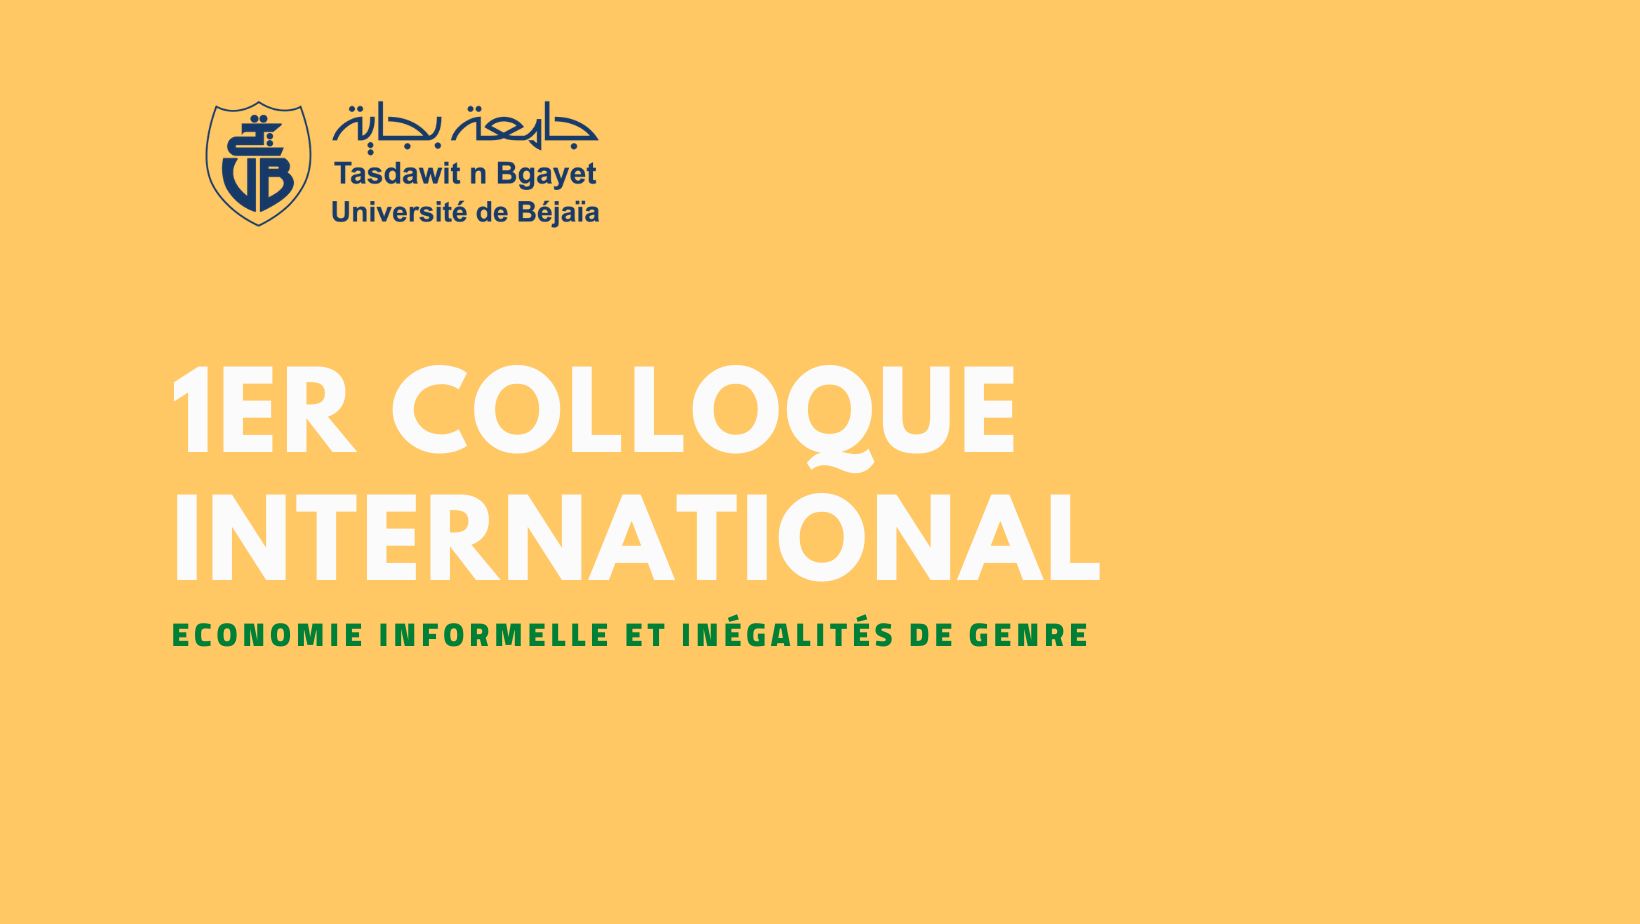 Invitation : Colloque International sur l'Economie informelle et les inégalités de genre à Bejaia